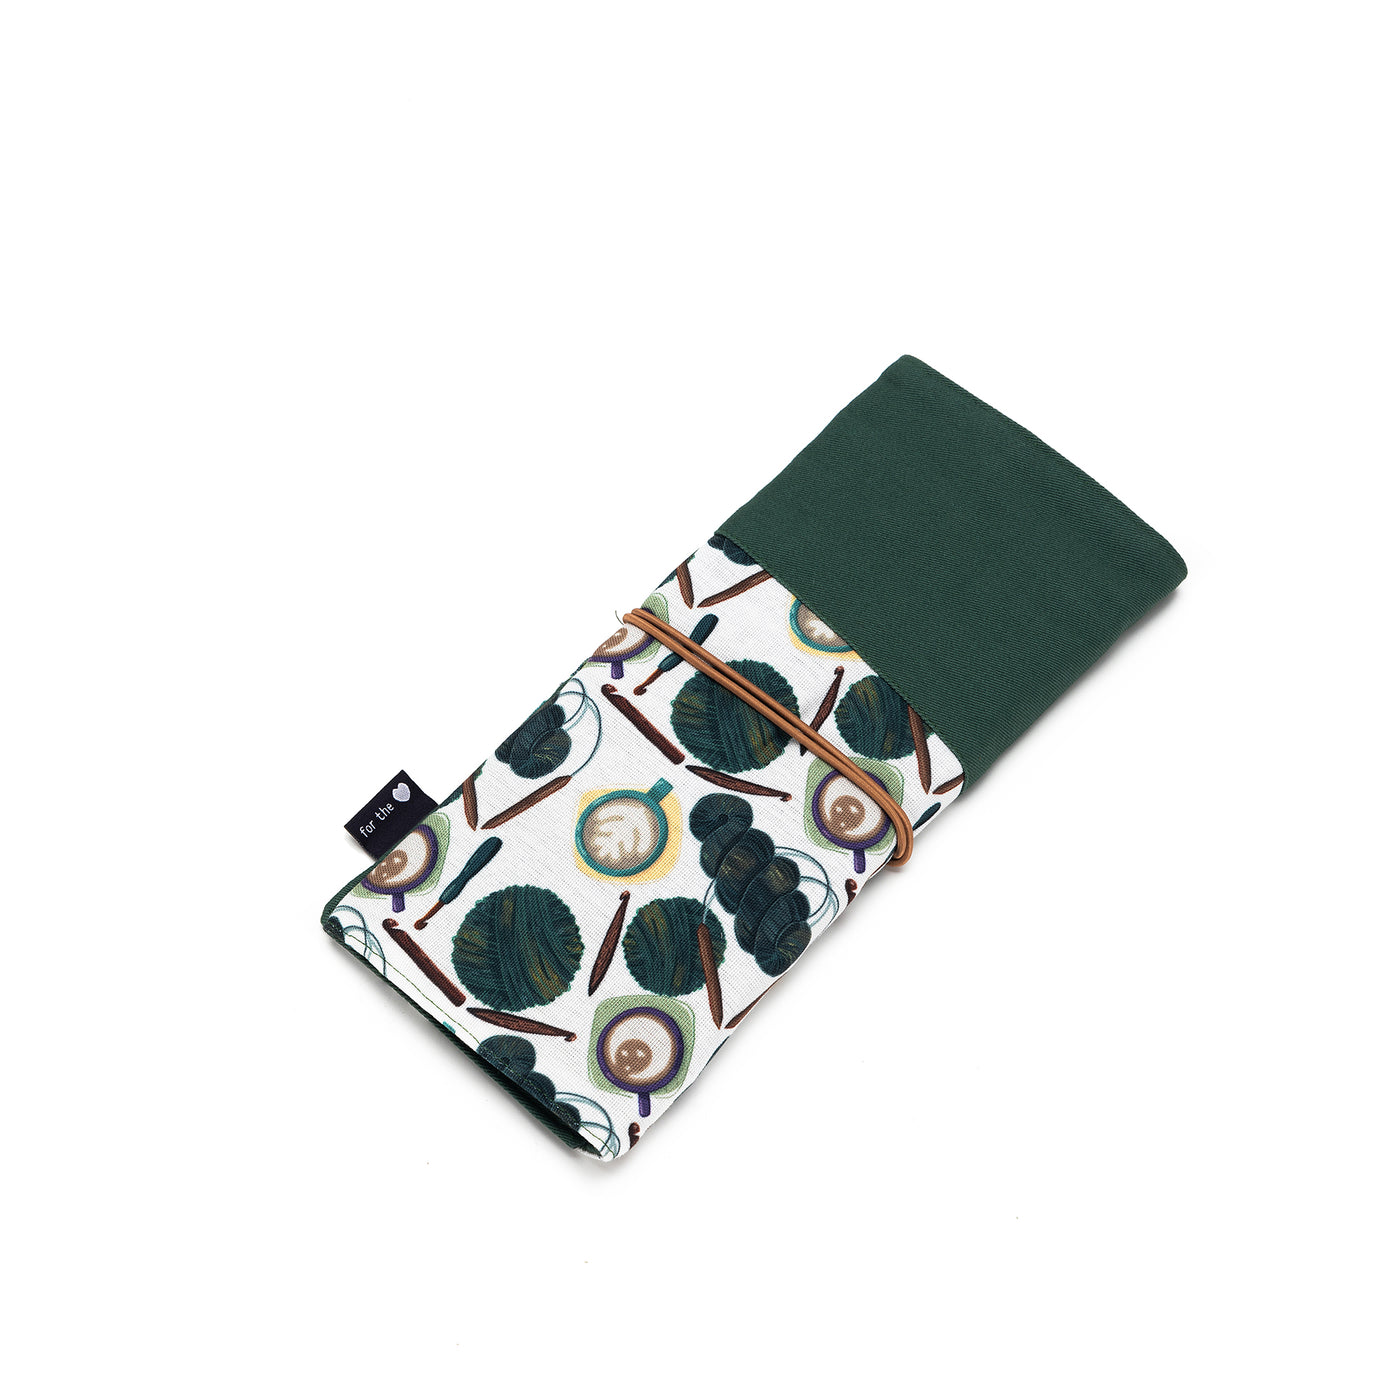 Tri-Fold Circular Needle Case | Coffee and Yarn Green Fabric Print (PREORDER)